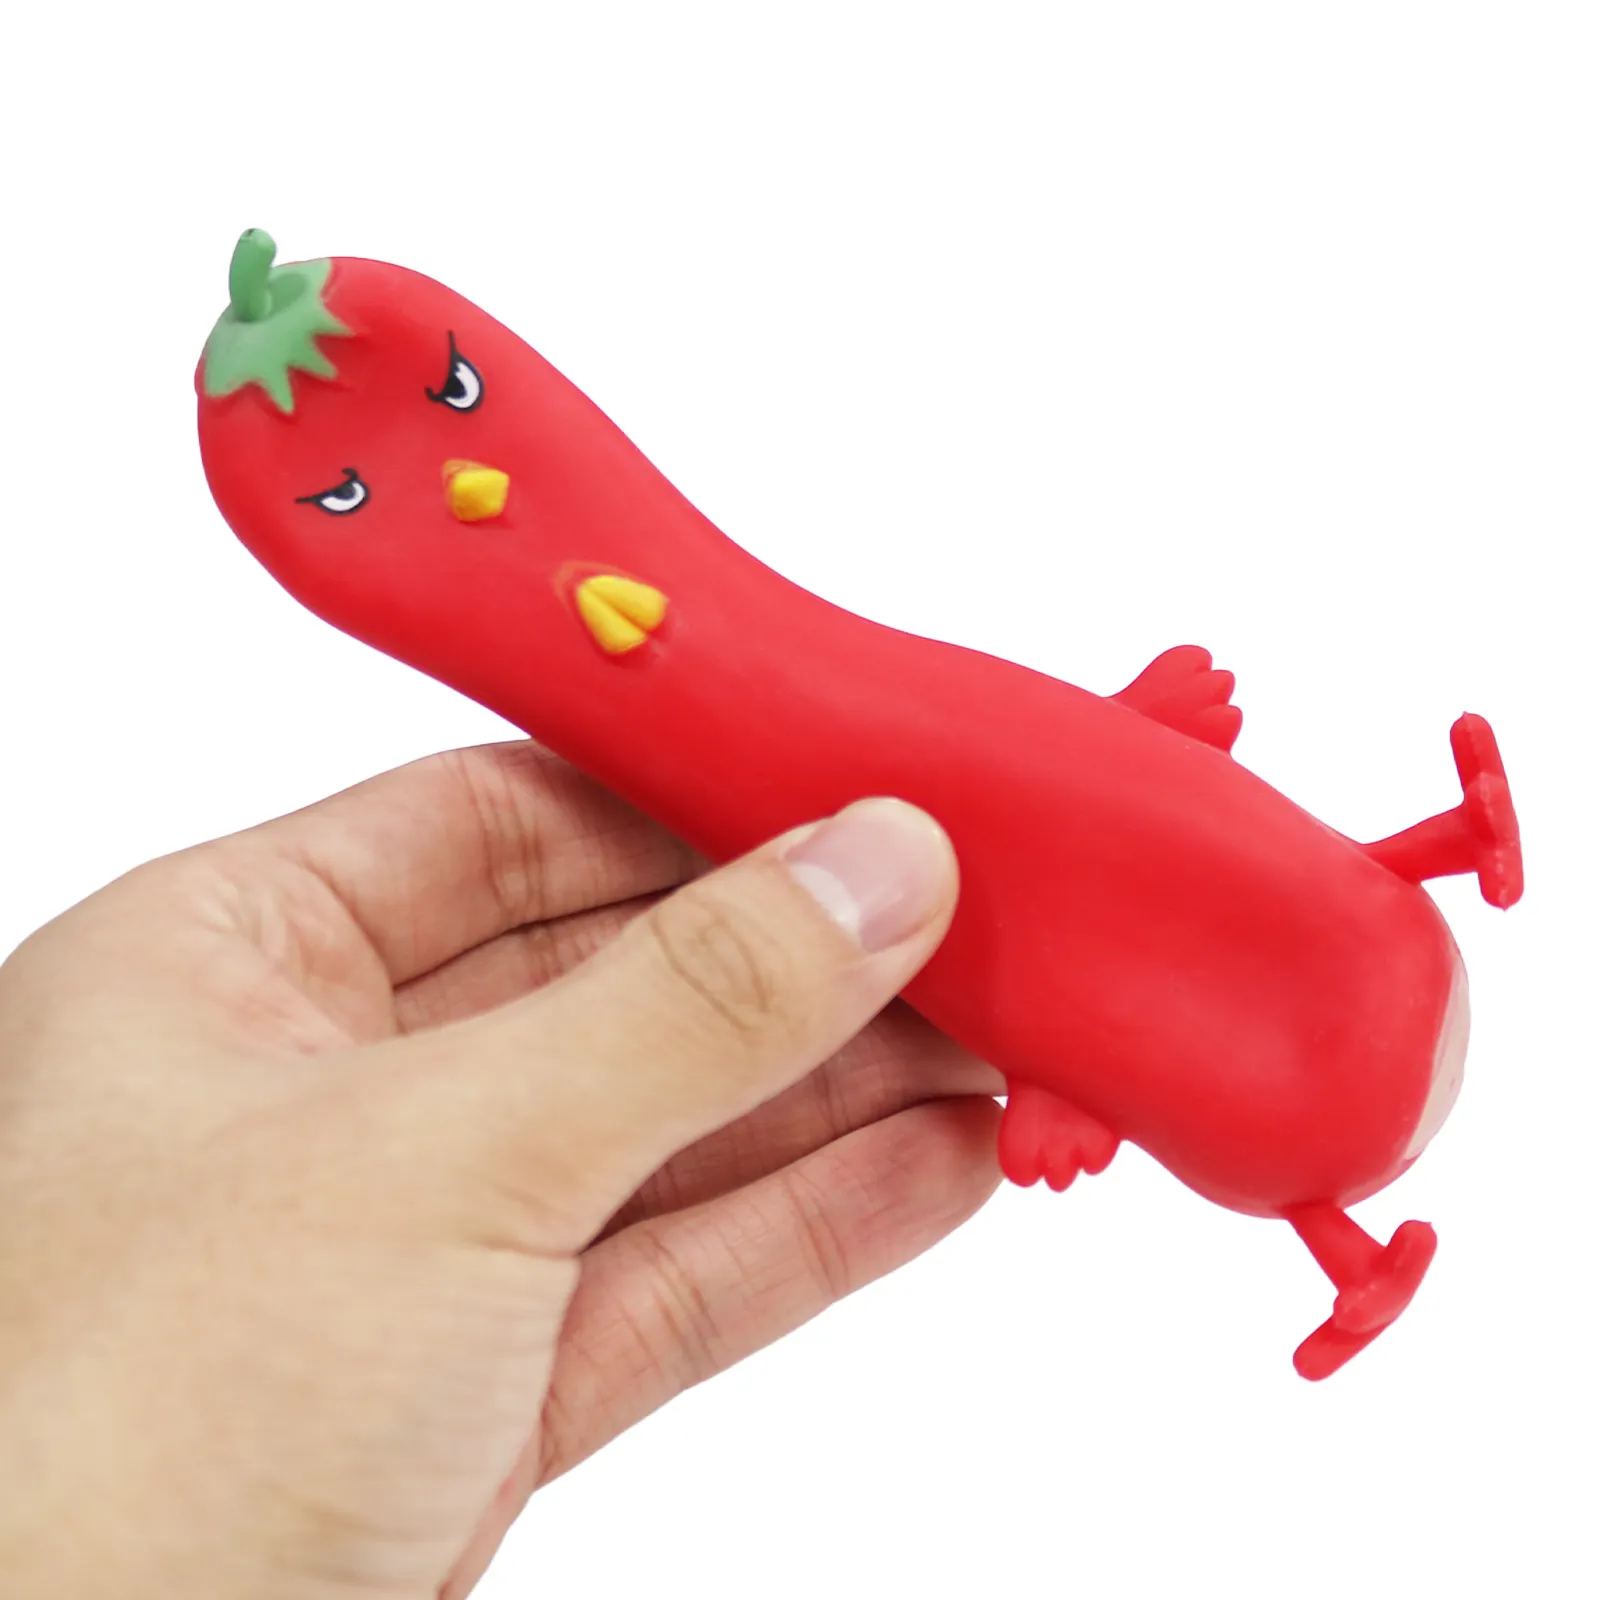 צעצועי סחיטת עוף כיפים בהתאמה אישית רכים ויצירתיים בצורת צ'ילי לילדים ומבוגרים